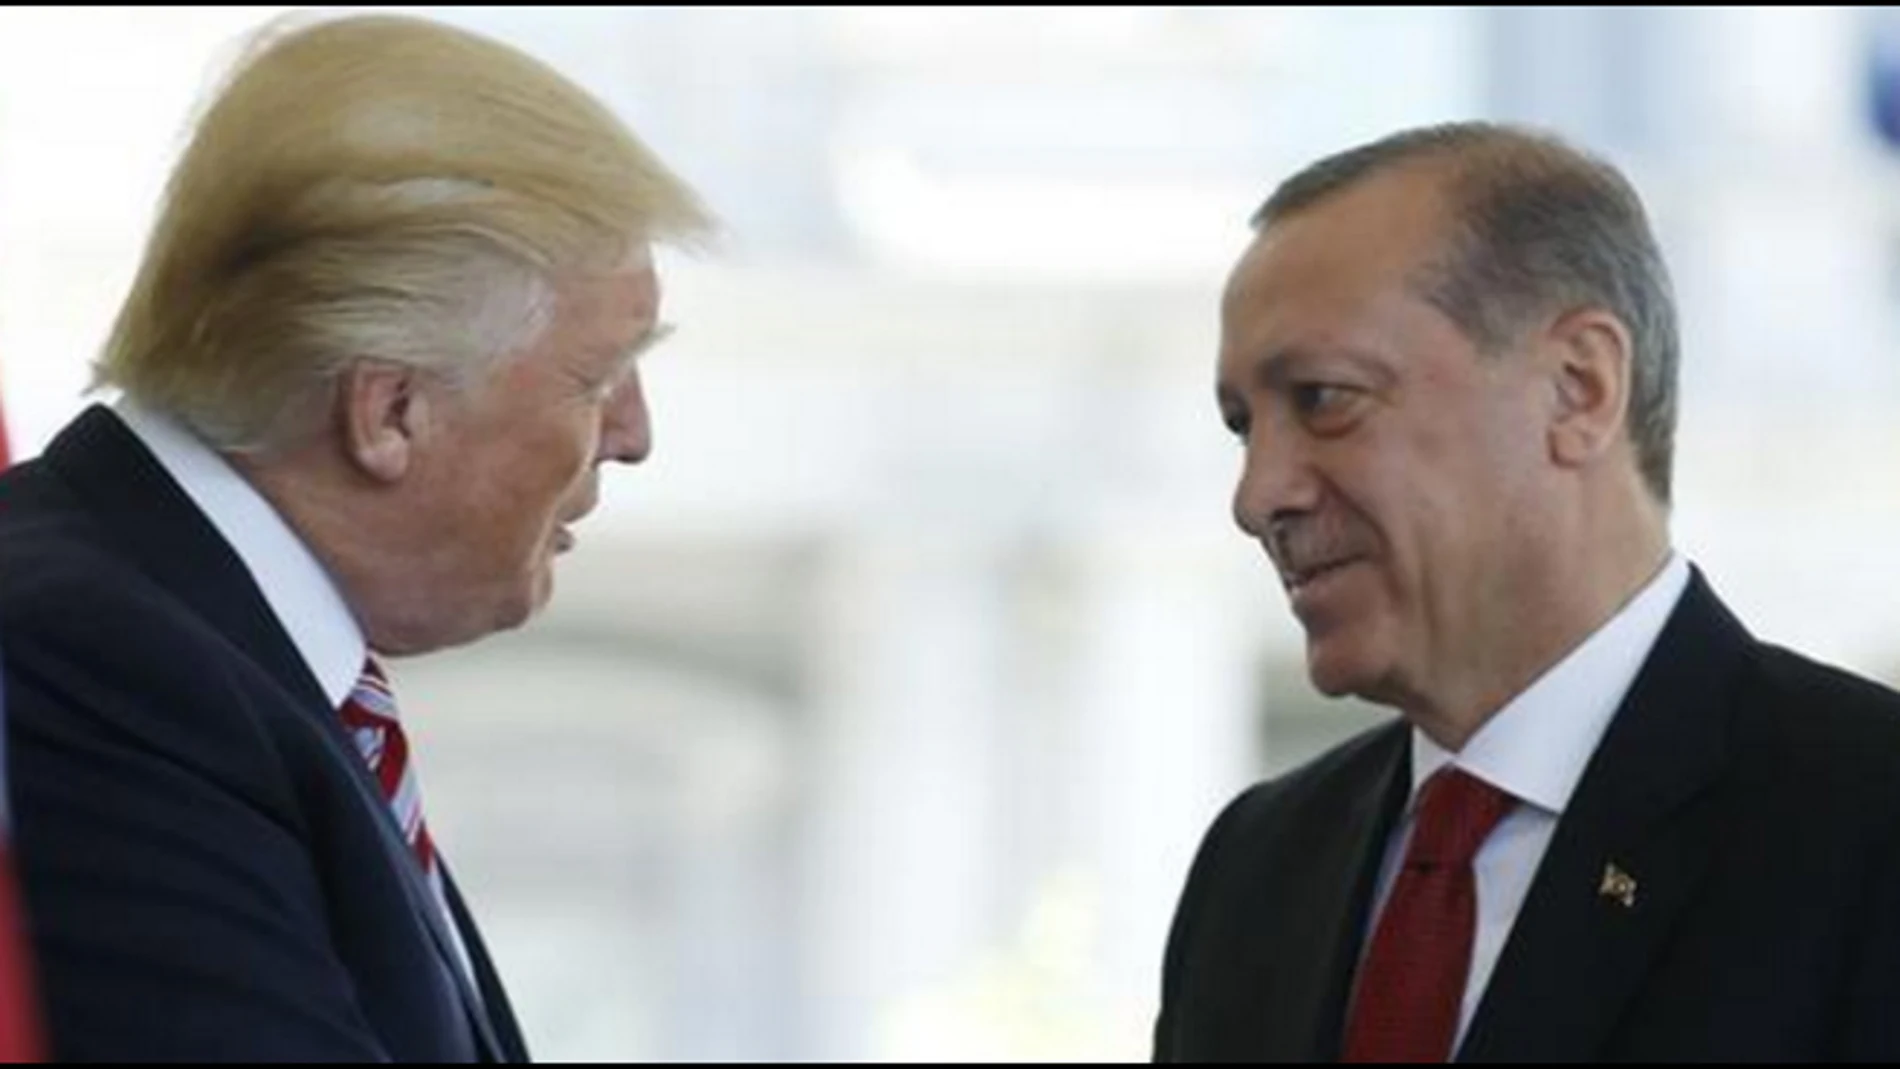 El presidente de EEUU Donald Trump saluda al presidente de Turquía Recep Tayyip Erdogan, en una imagen de archivo / Reuters